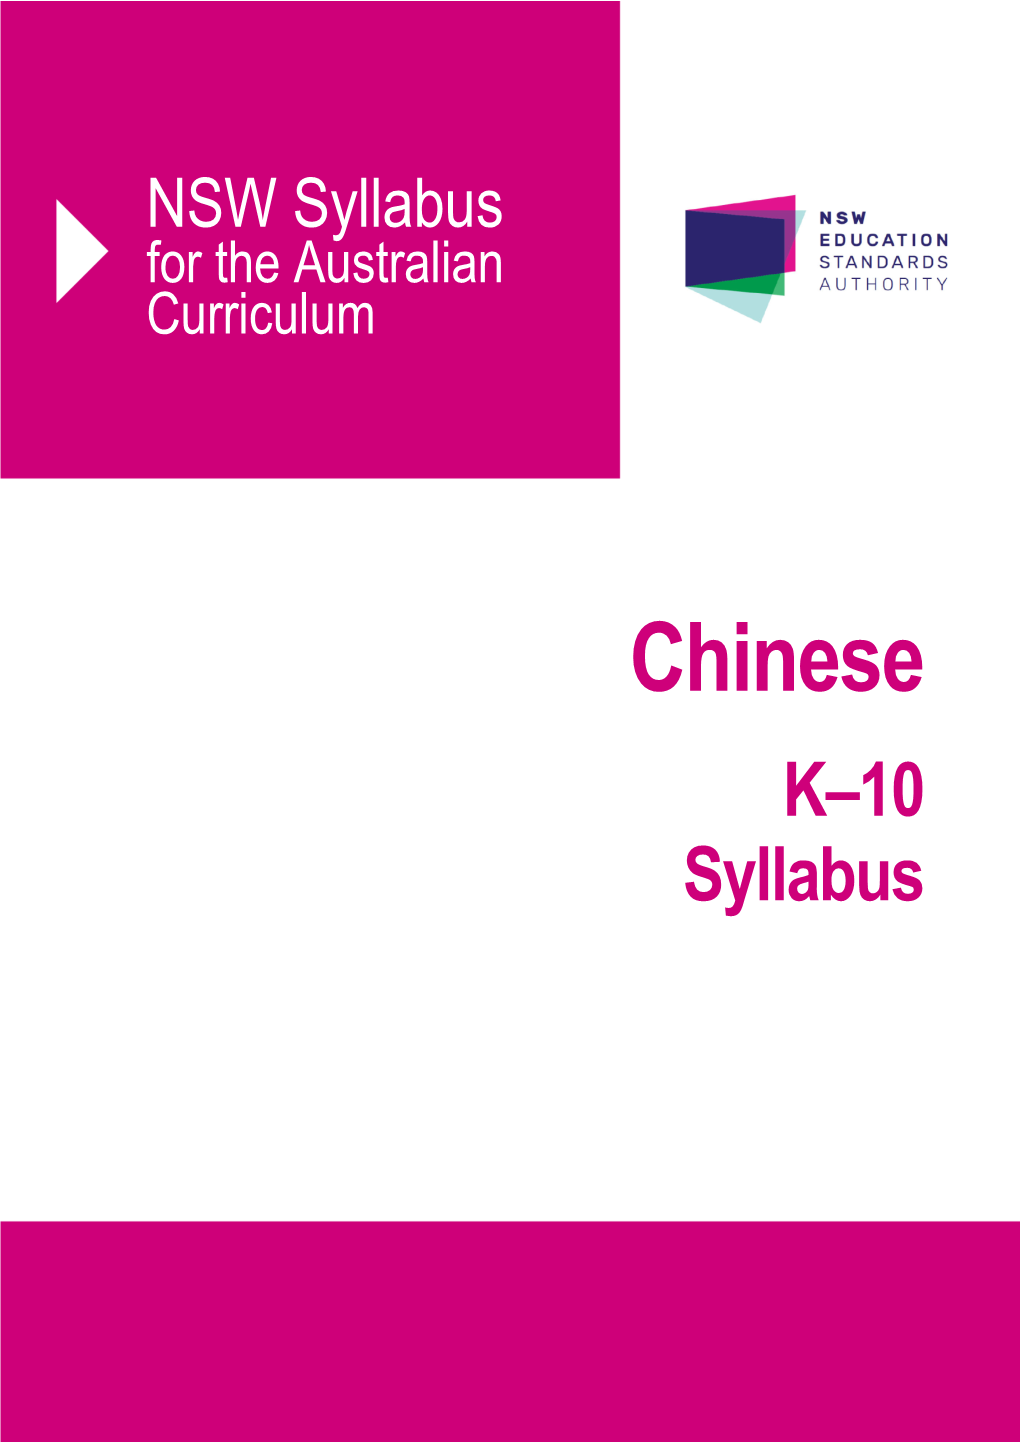 NSW Chinese K-10 Syllabus